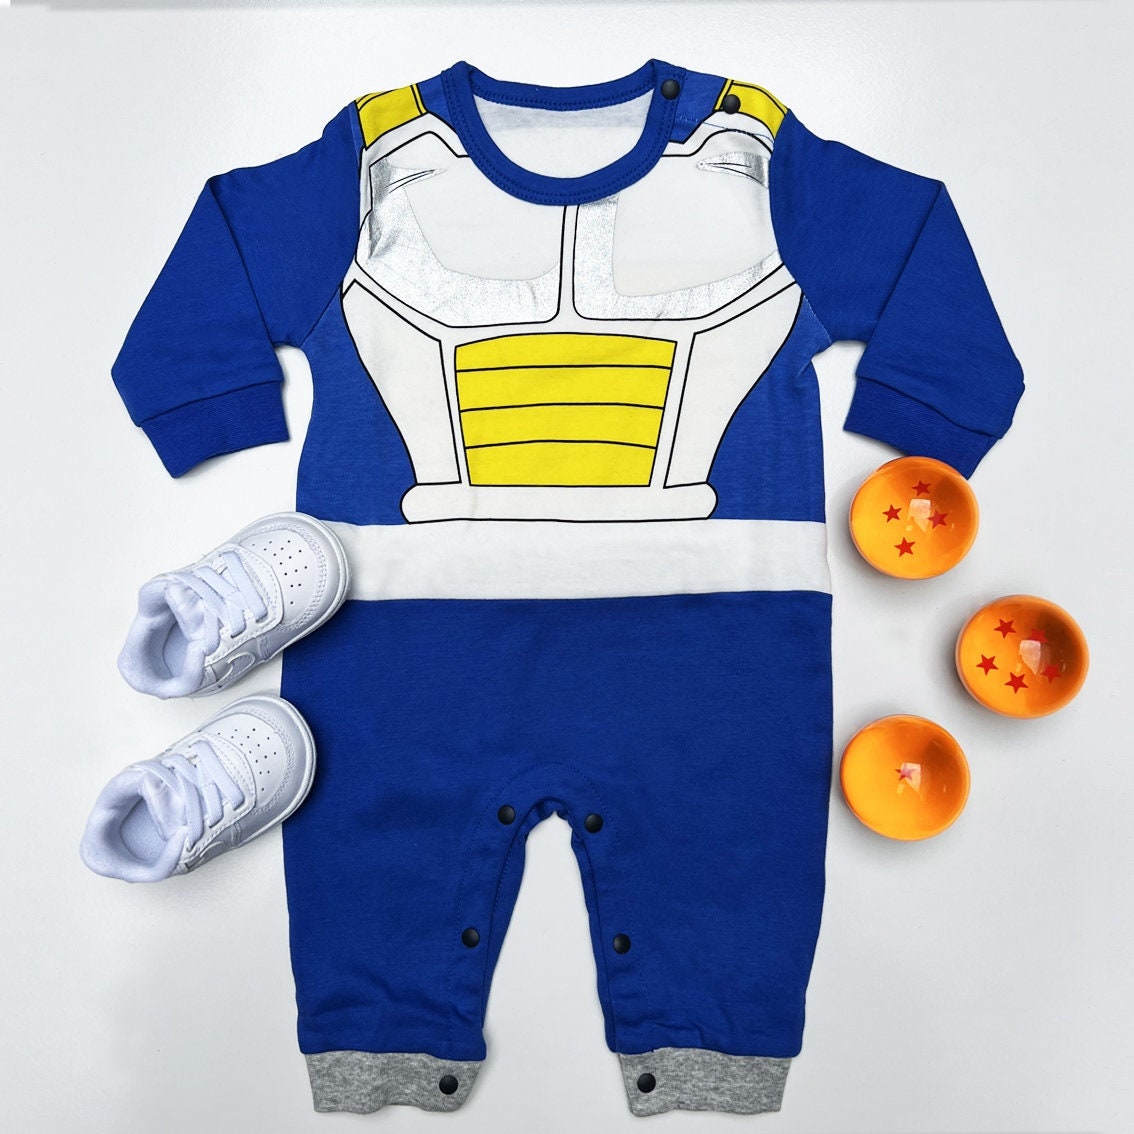 Cofanetto costume e parrucca Super Sayan Vegeta Dragon Ball™ bambino:  Costumi bambini,e vestiti di carnevale online - Vegaoo